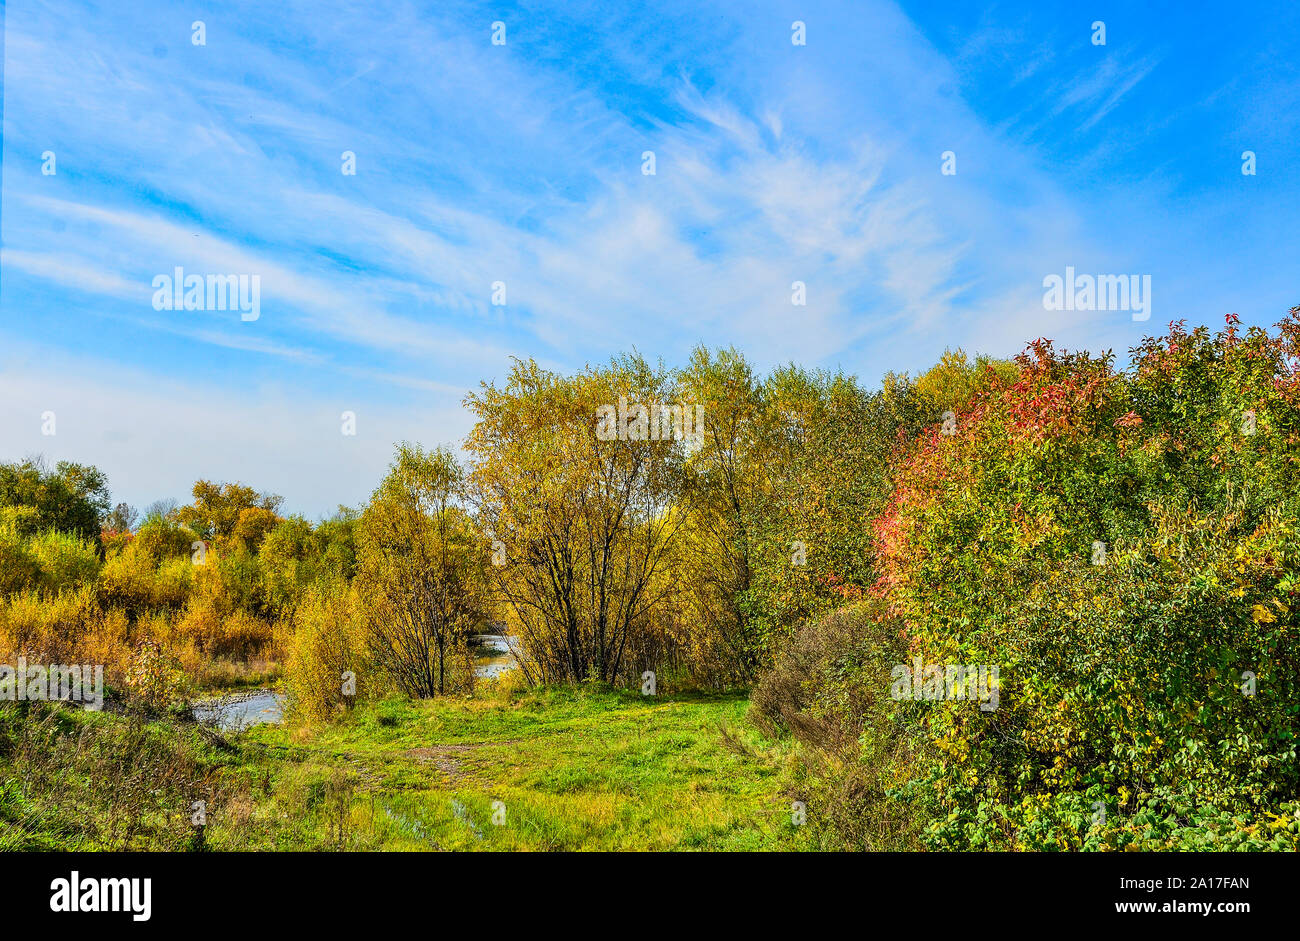 Idyllischen bunten Herbst Landschaft mit wenig Wald Fluss im Hintergrund, Streaming zwischen golden gefärbten Bäume und Sträucher. Malerische f Stockfoto